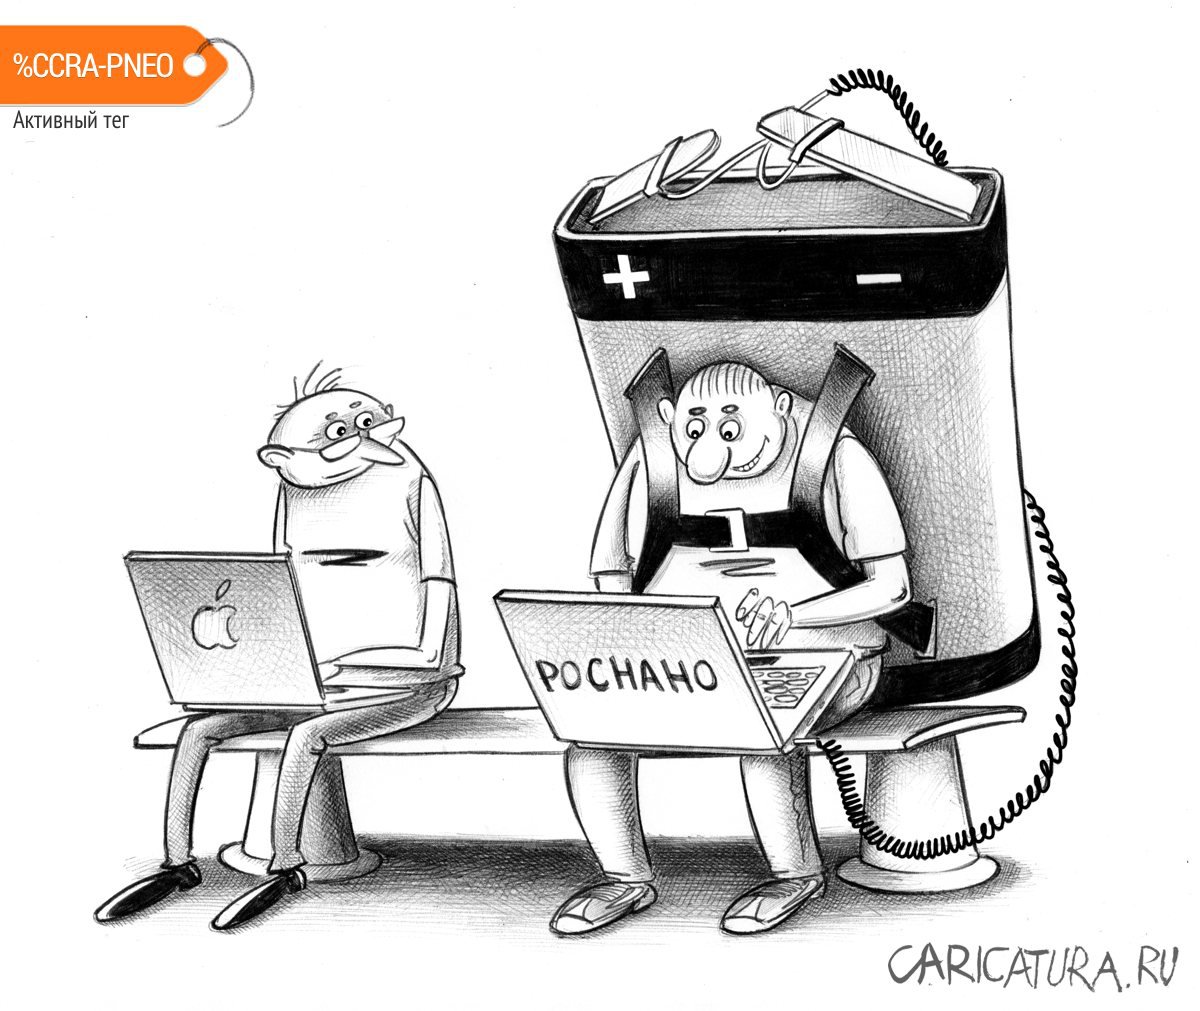 Карикатура "Новые технологии", Сергей Корсун